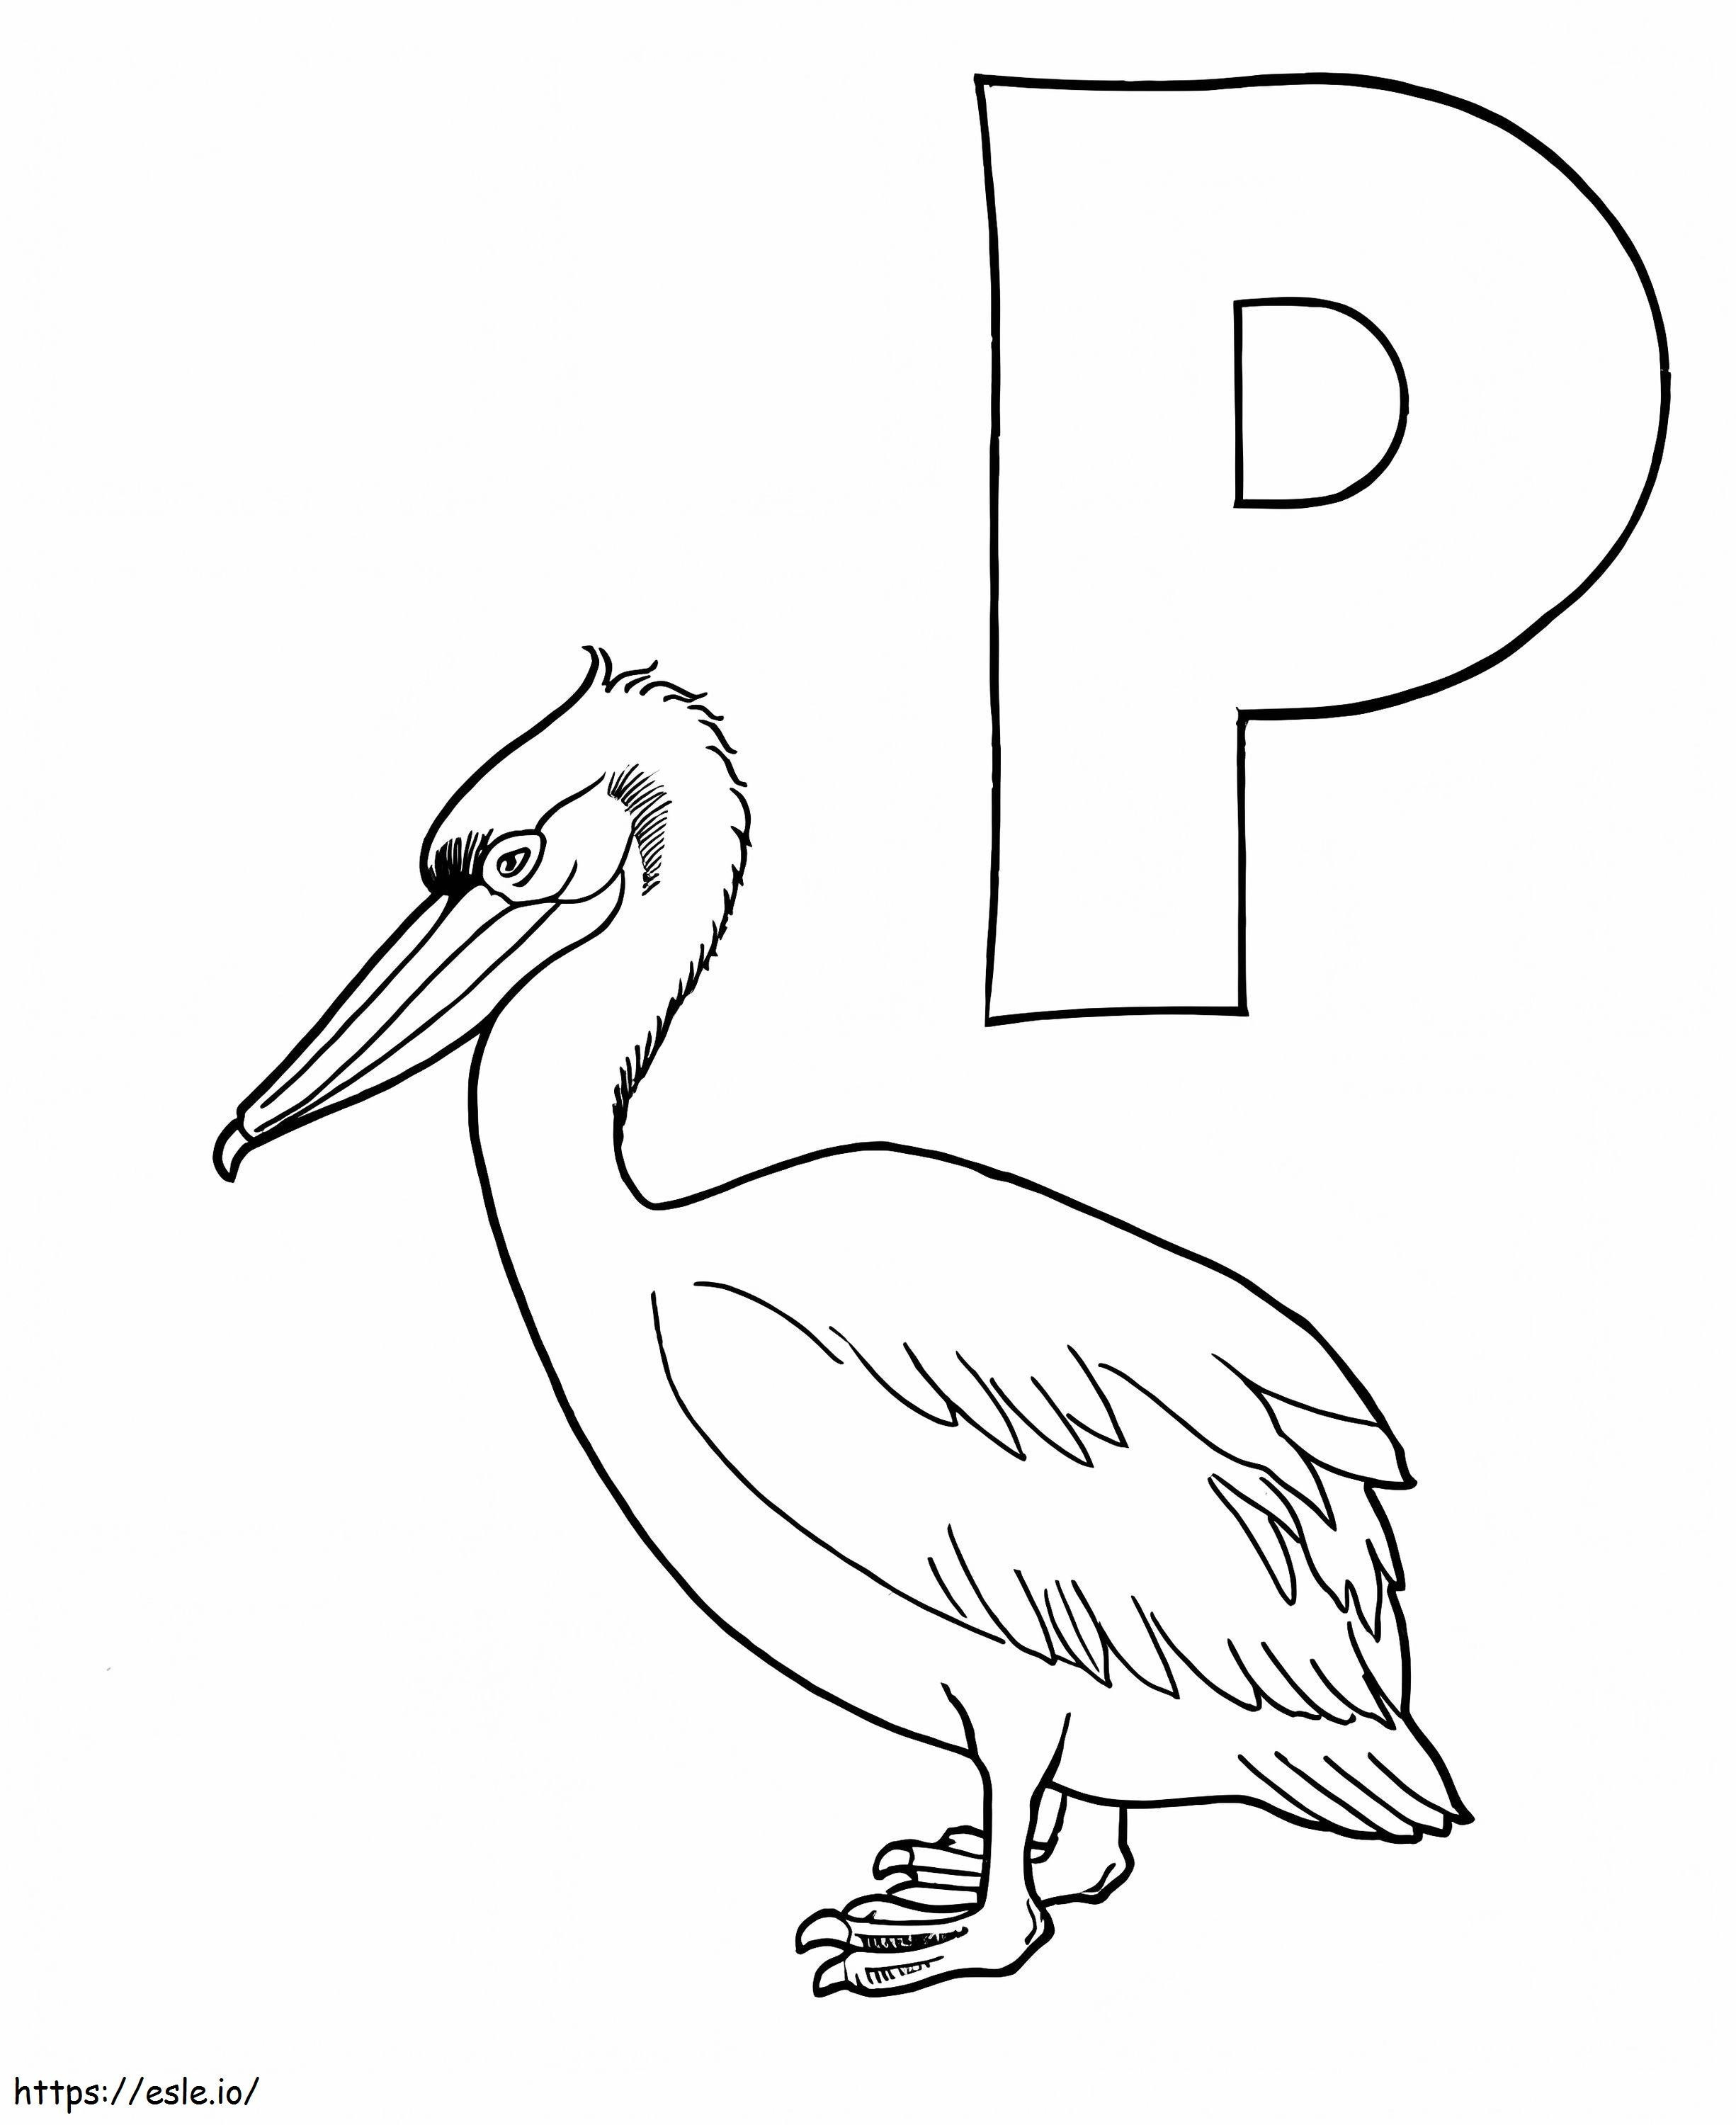 Pelican și litera P de colorat